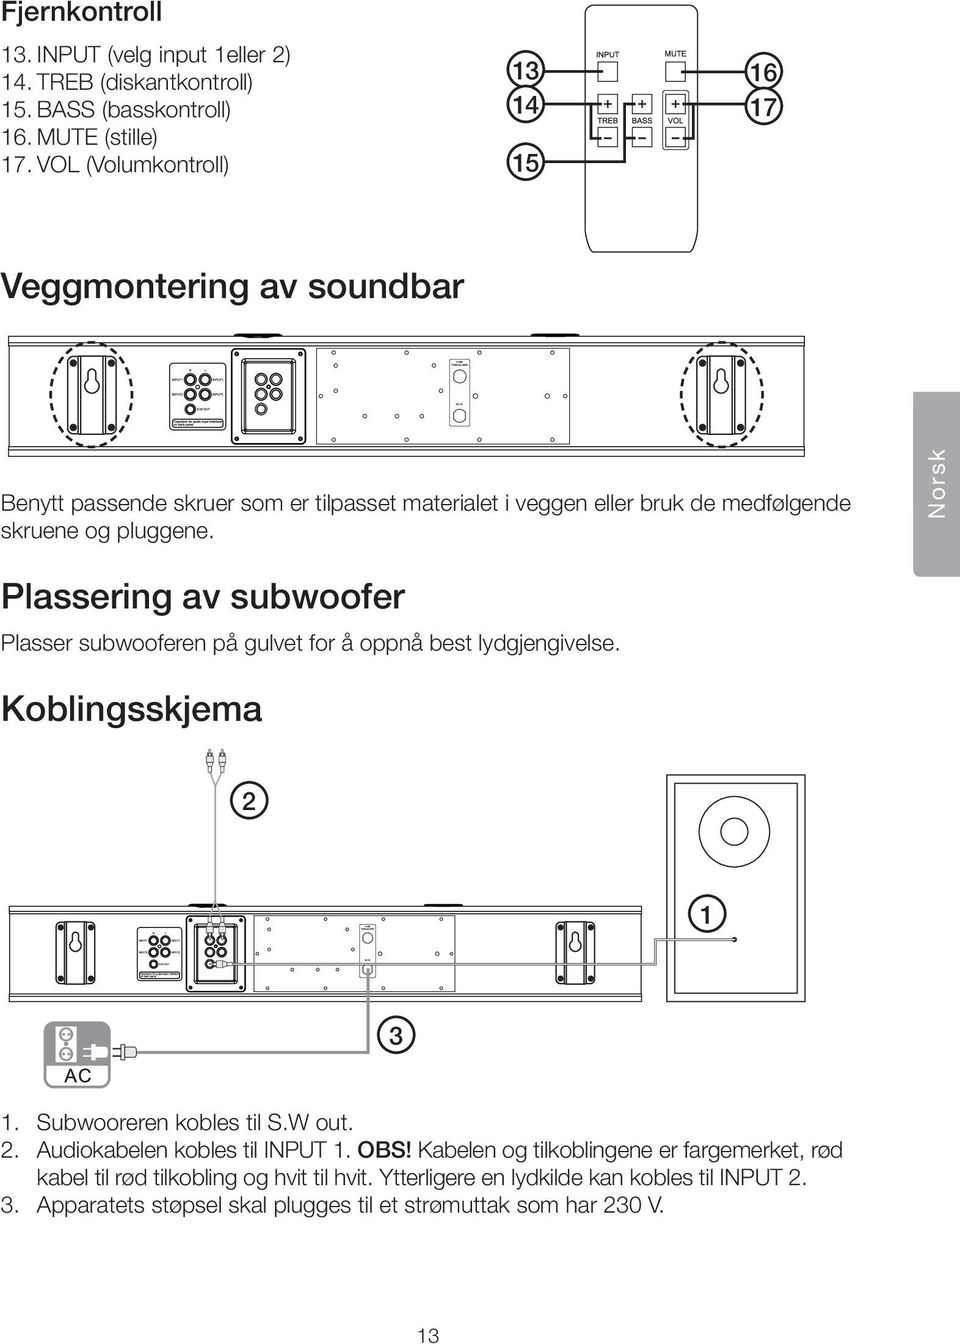 Norsk Plassering av subwoofer Plasser subwooferen på gulvet for å oppnå best lydgjengivelse. Koblingsskjema 2 1 3 1. Subwooreren kobles til S.W out. 2. Audiokabelen kobles til INPUT 1.